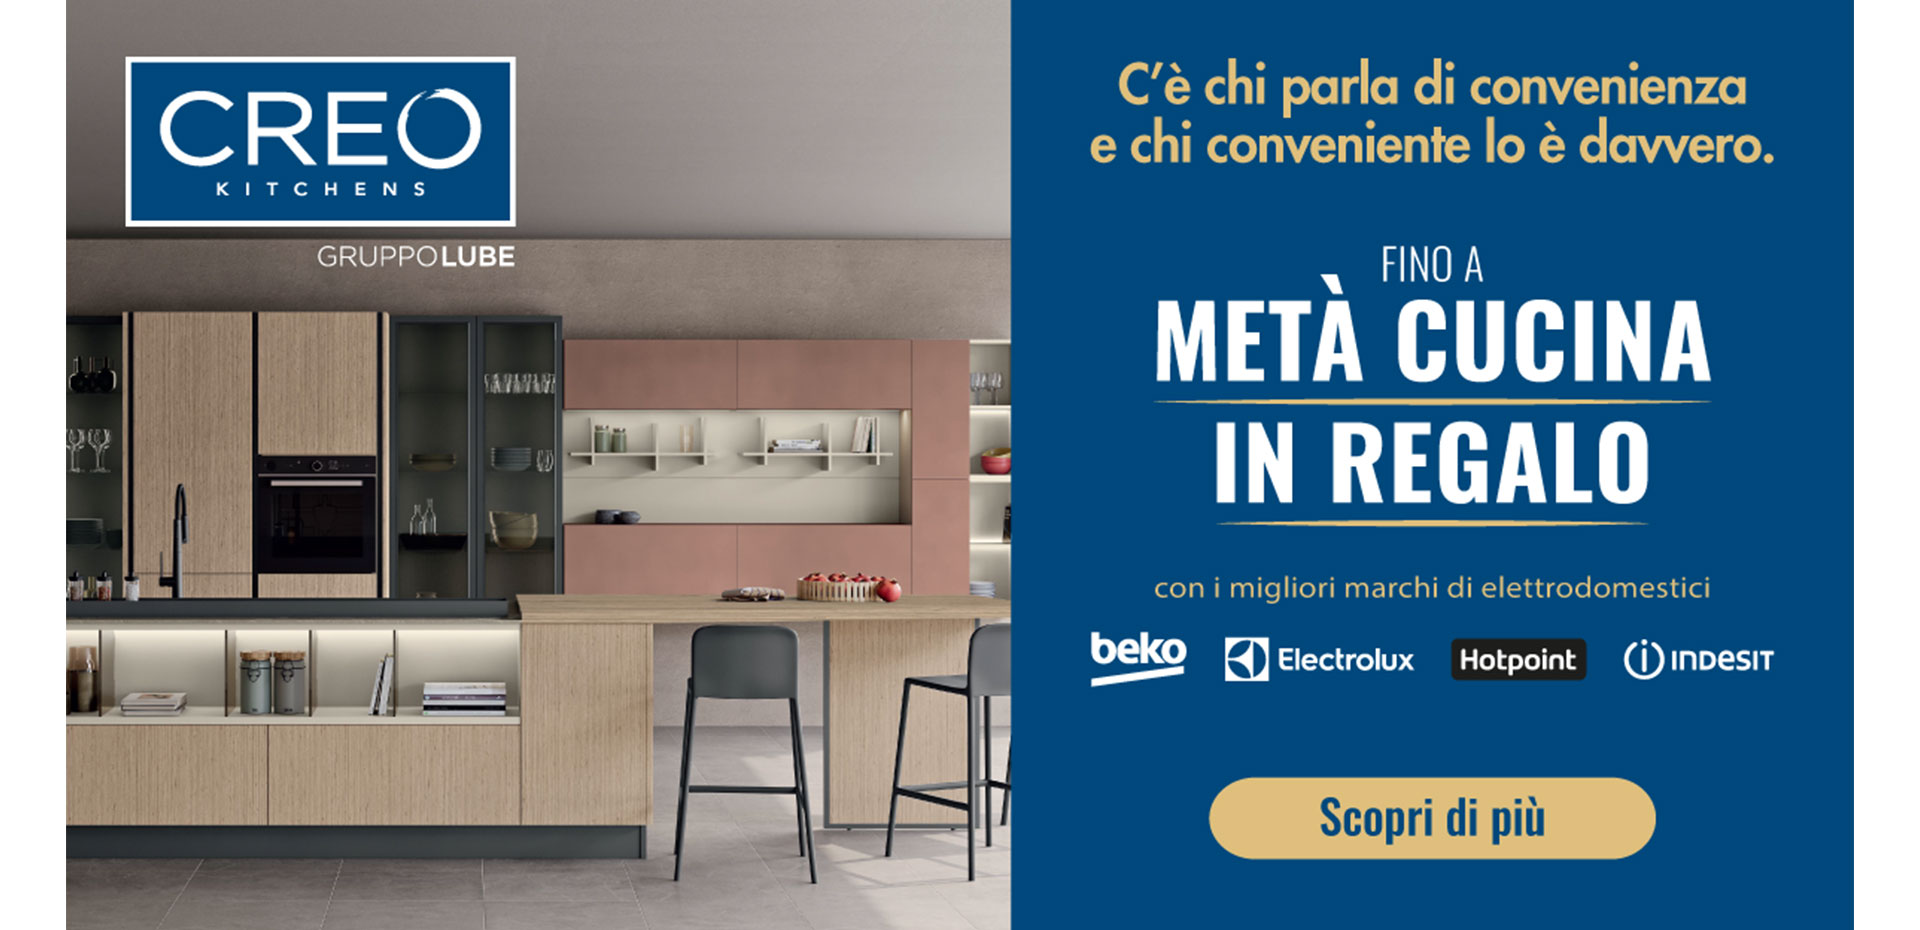 Sconto fino al 50% sui modelli CREO Kitchens. Hai tempo fino al 03 marzo! - LUBE CREO Store Guidonia (Roma)